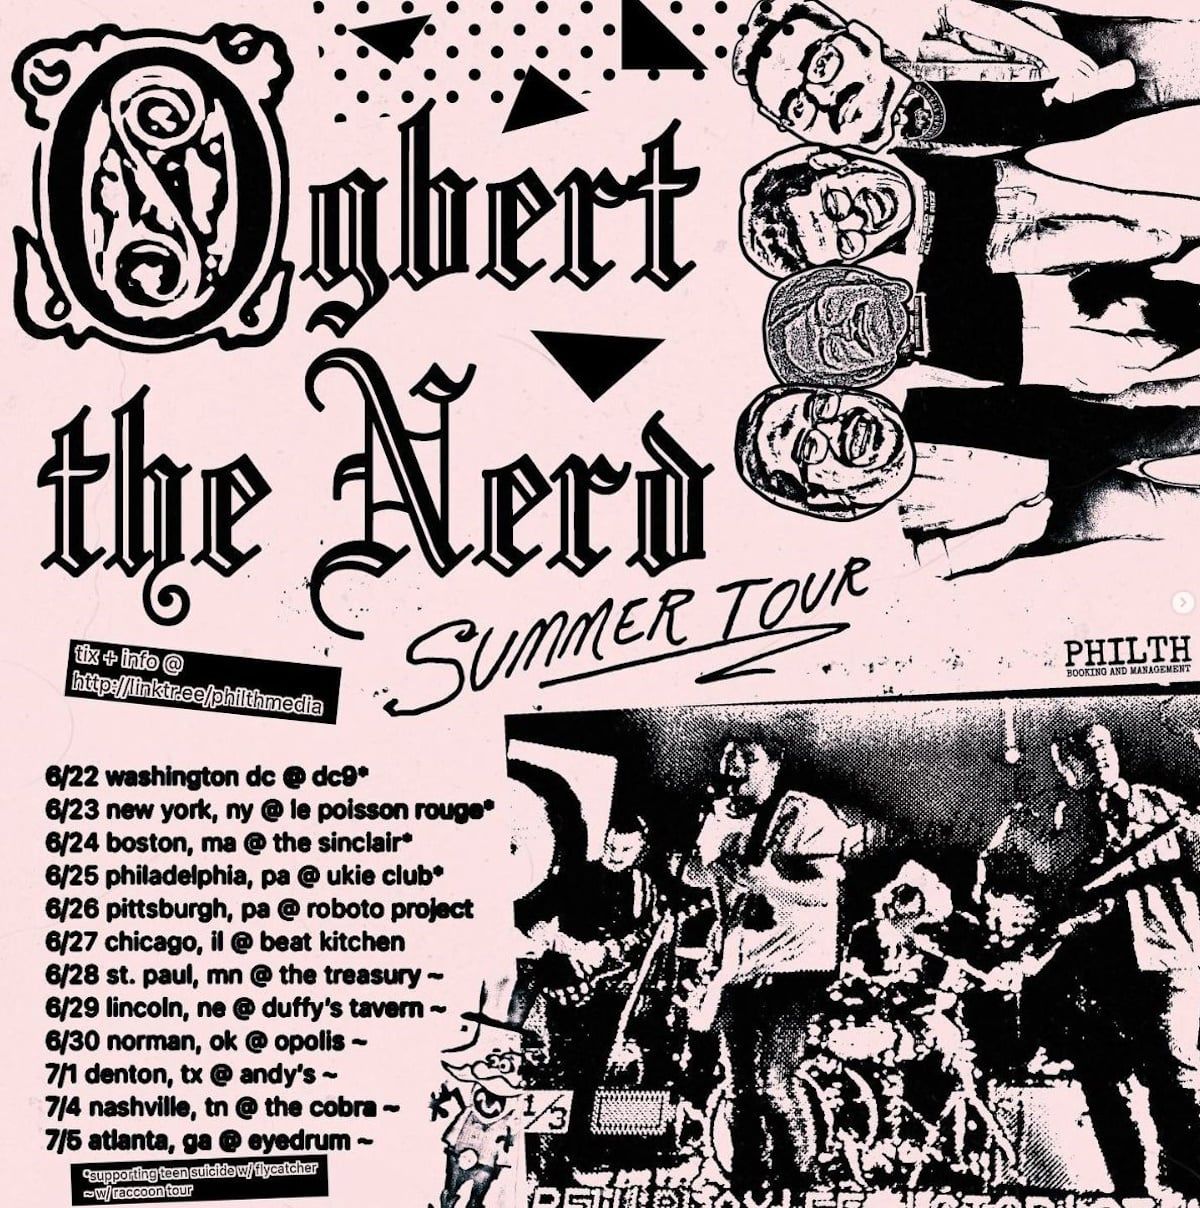 Ogbert the Nerd tour